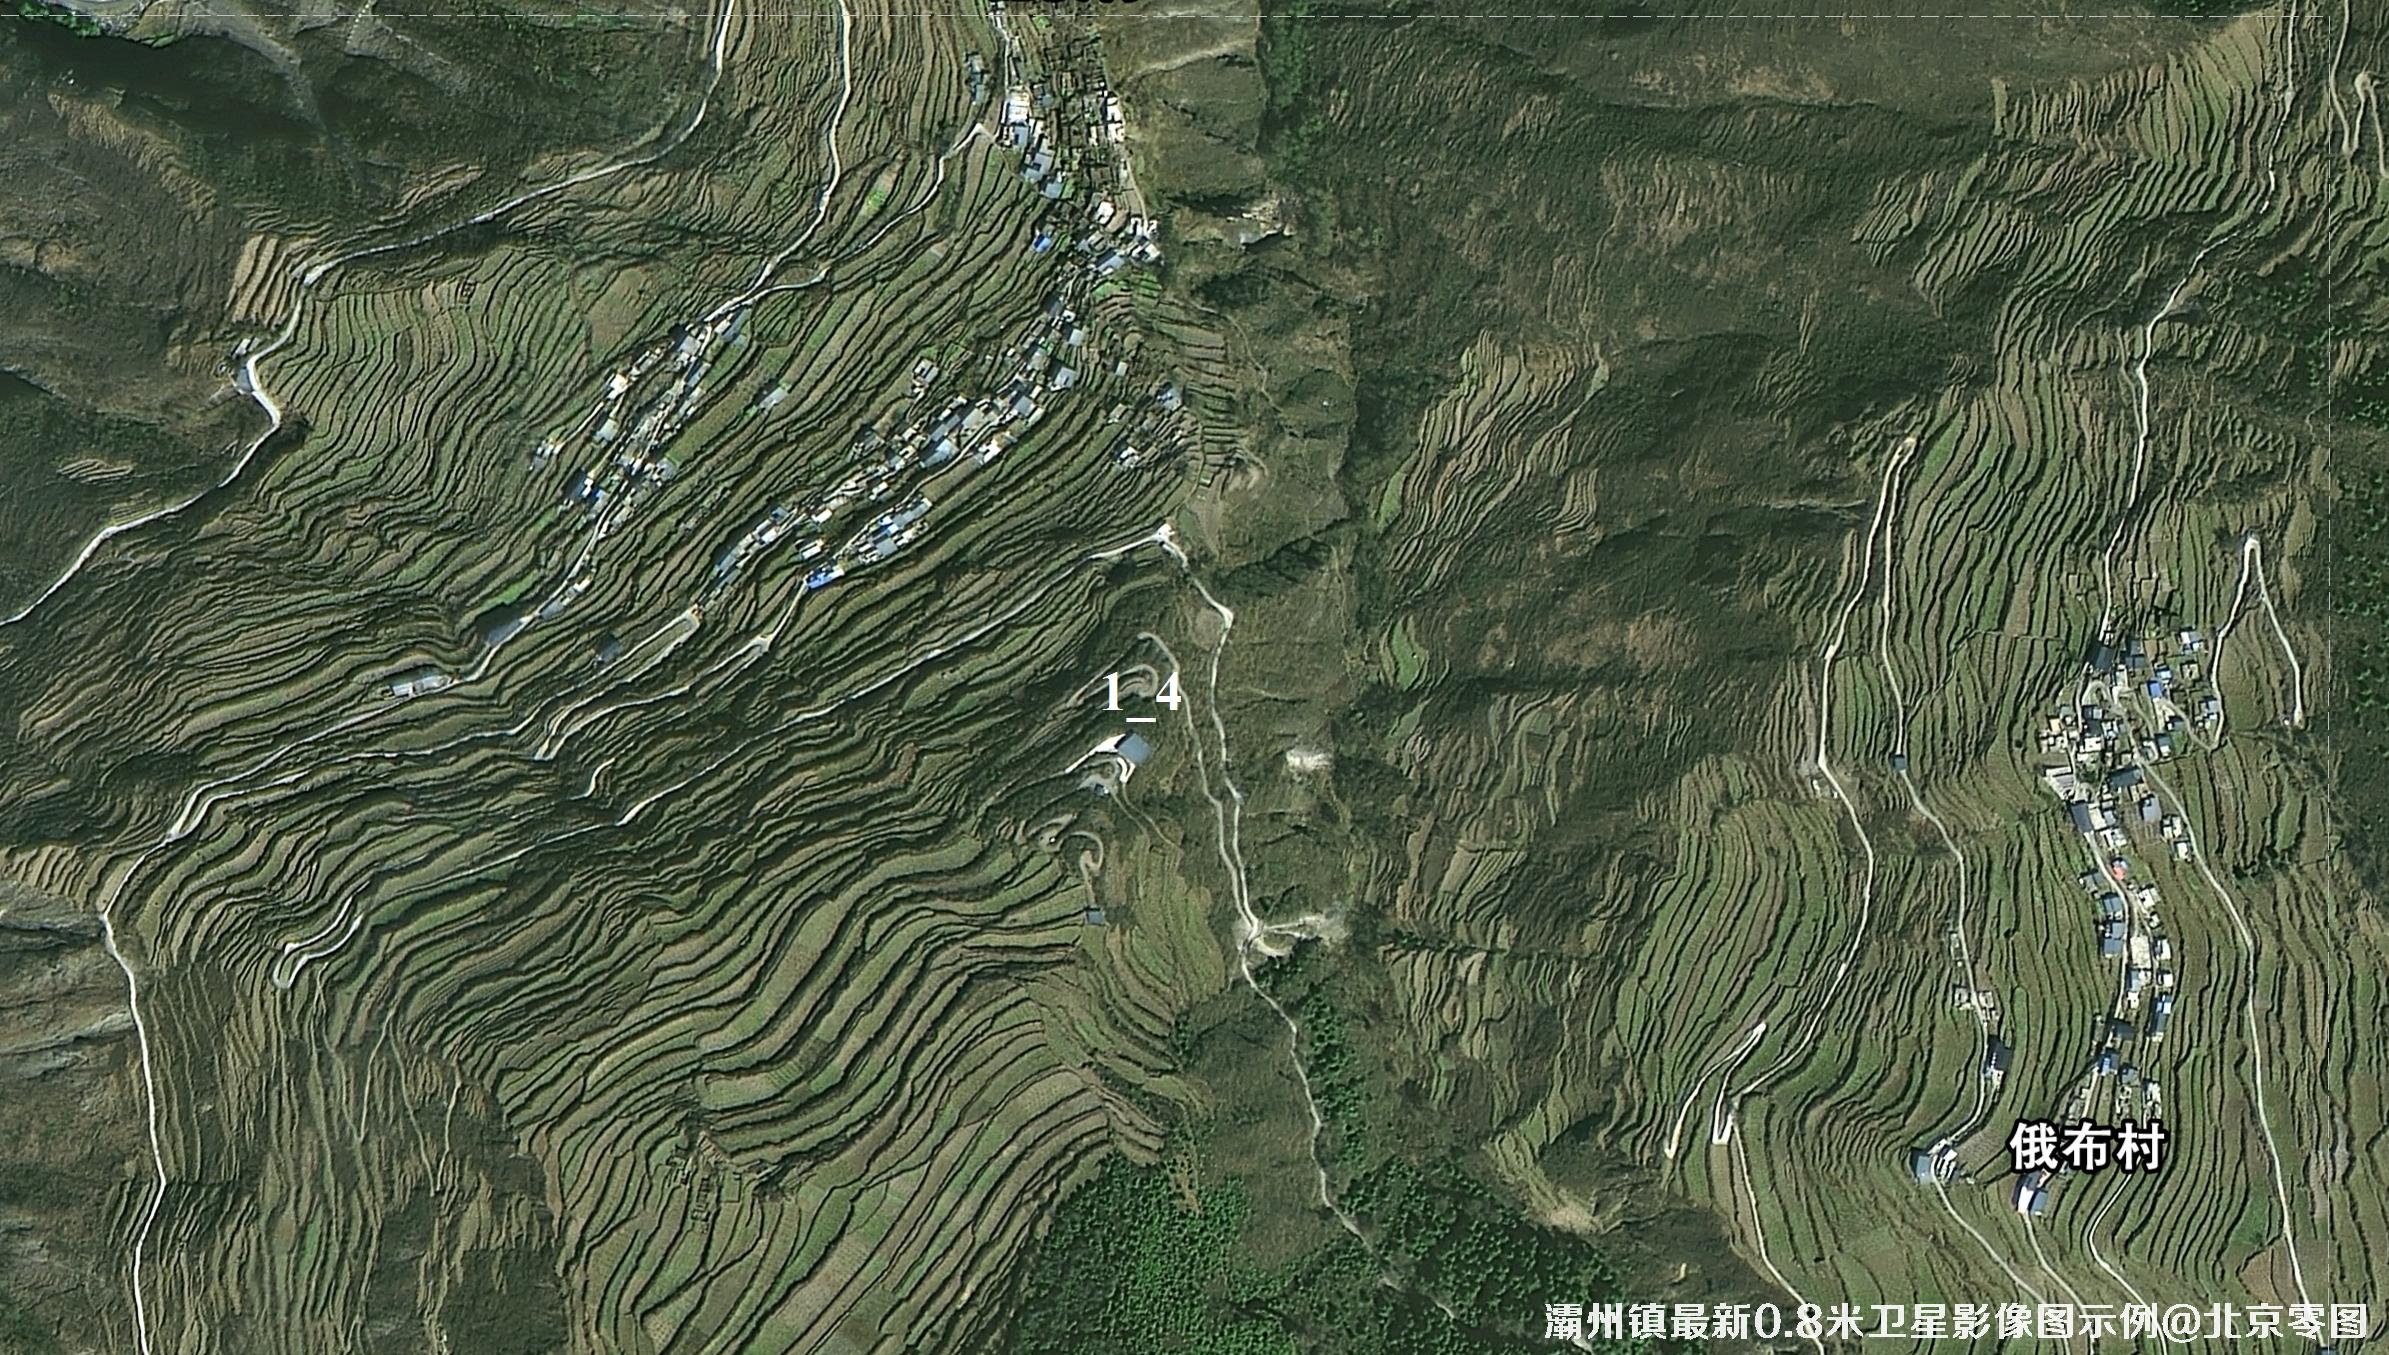 灞州镇最新0.8米卫星影像图示例